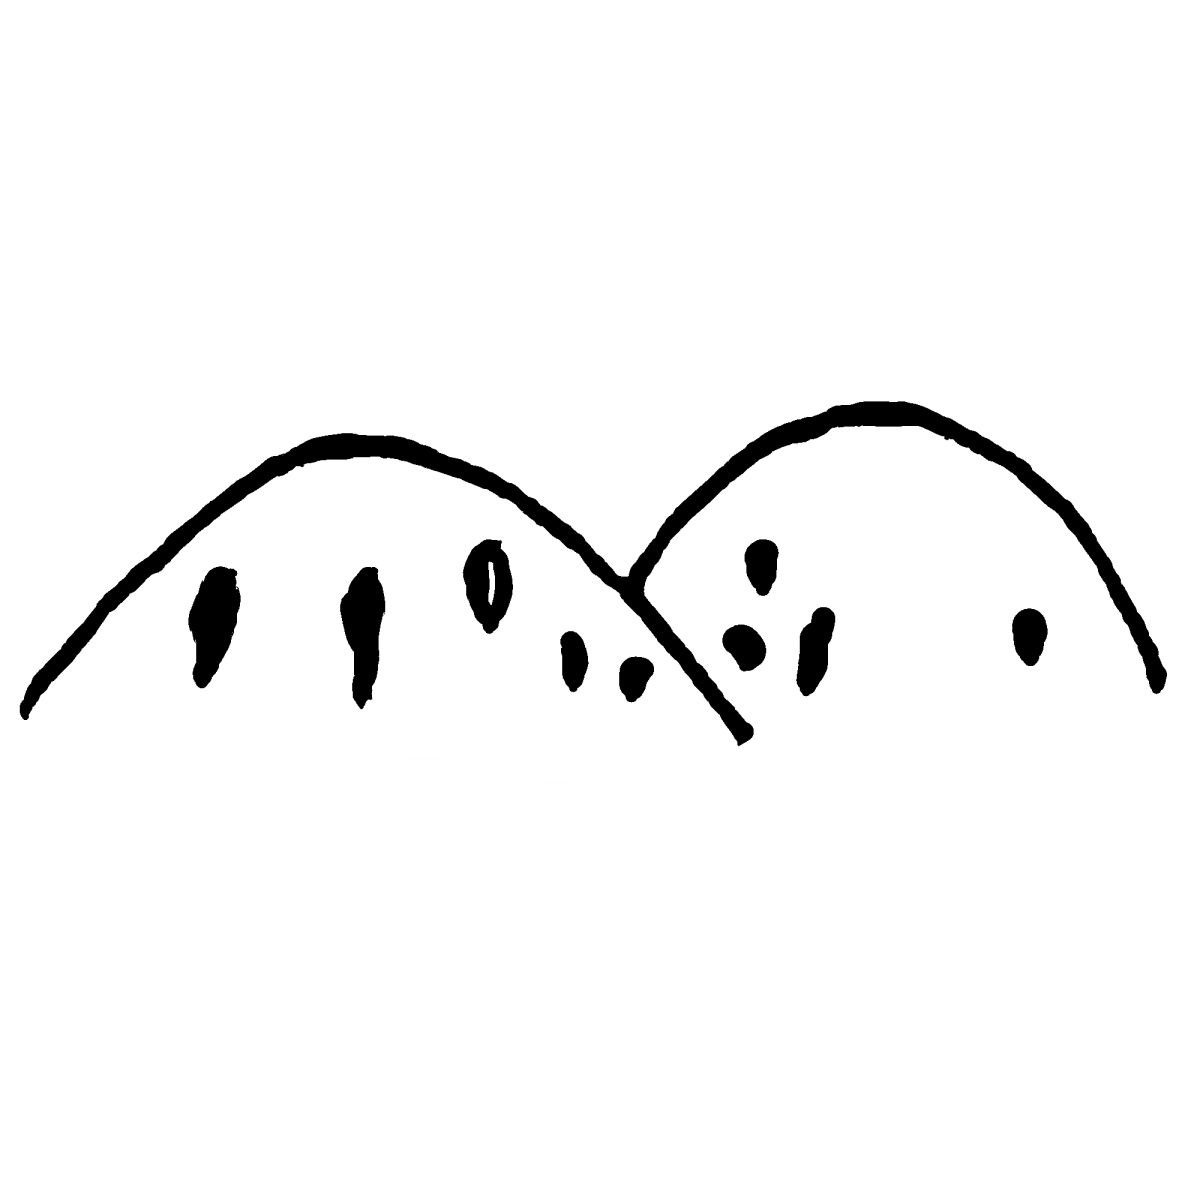 山1のイラスト / Mountain1 Illustration